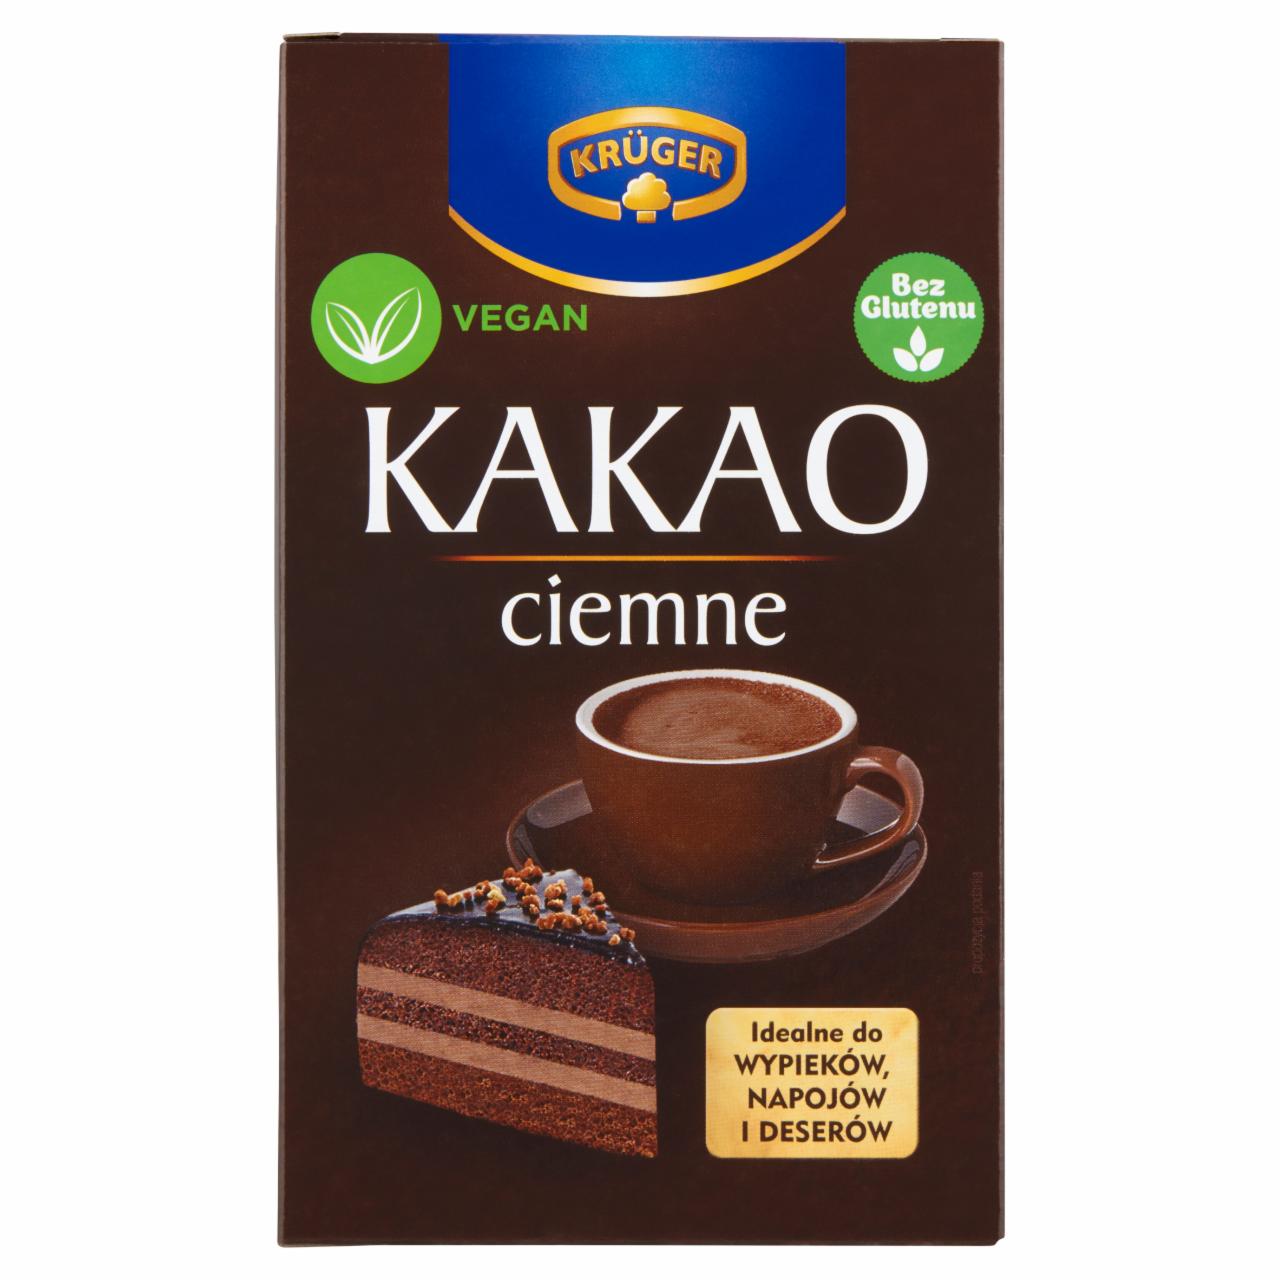 Zdjęcia - Krüger Familijne kakao extra ciemne 80 g